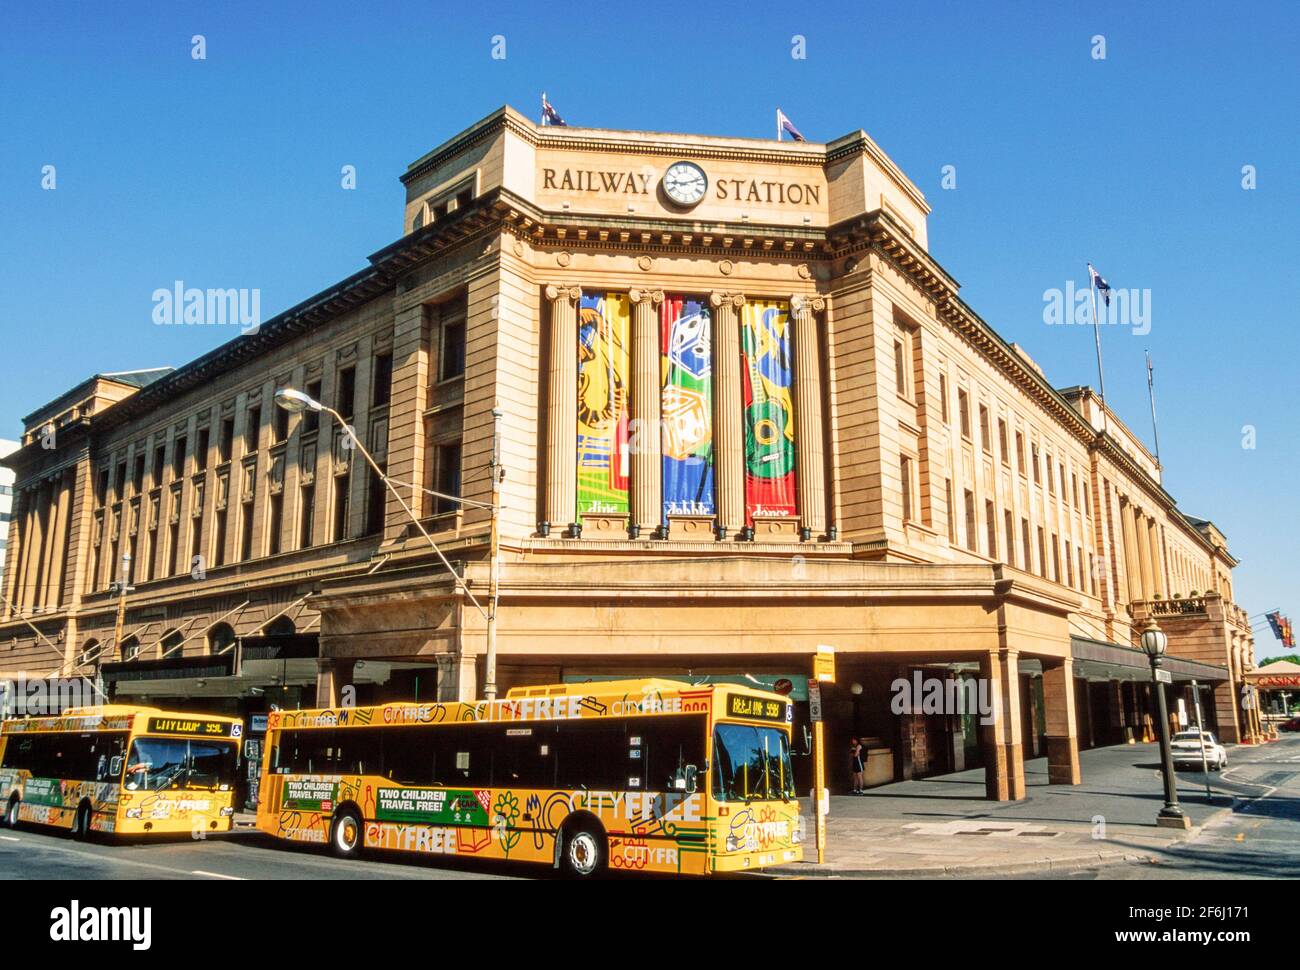 1999 - Adelaide Australia Meridionale - edificio neoclassico della stazione ferroviaria di Adelaide e Casinò di Adelaide visto da North Terrace, Adelaide, Australia Meridionale. La stazione ferroviaria di Adelaide è il capolinea centrale del sistema ferroviario della metropolitana di Adelaide. Tutte le linee si avvicinano alla stazione da ovest, ed è una stazione di terminal senza linee passanti. Dispone di nove piattaforme, tutte dotate di cingoli a carreggiata larga. Si trova sul lato nord di North Terrace, ad ovest della Parliament House Adelaide.Adelaide Casino utilizza le parti vuote dell'edificio della stazione Foto Stock